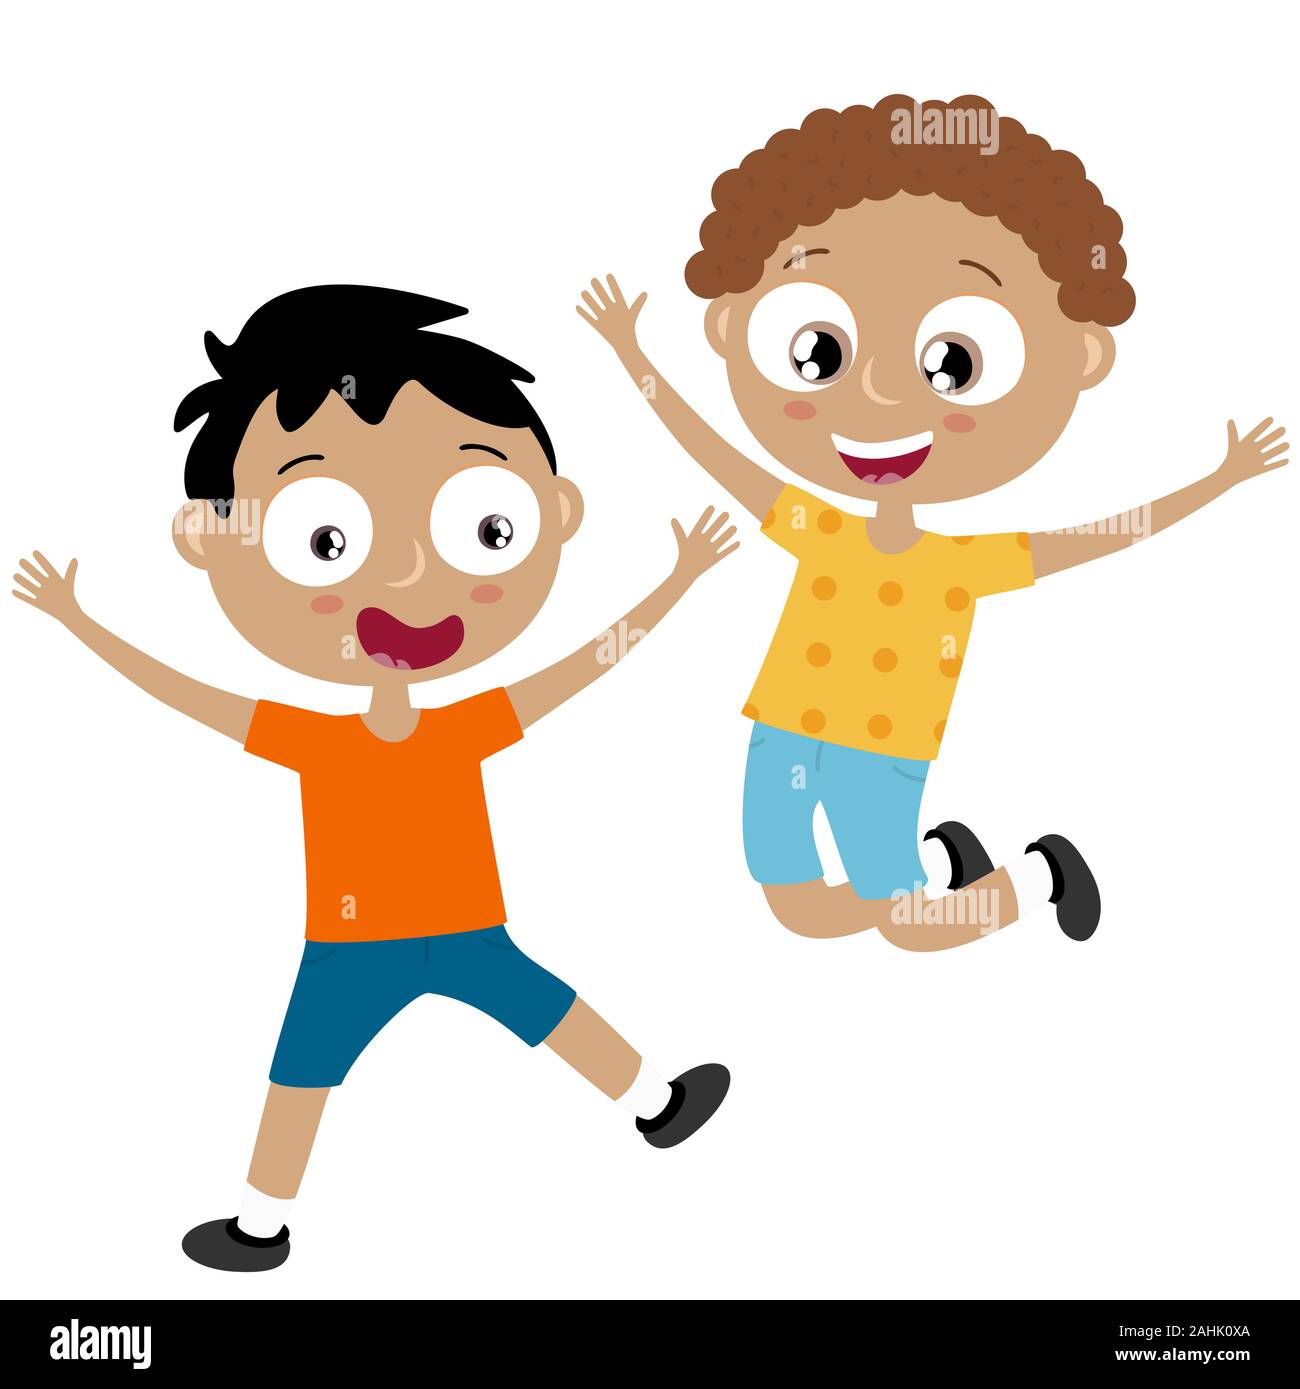 EPS 10 Vektordatei anzeigen glückliche junge Kinder mit unterschiedlichen Hautfarben, Jungen lachen, hüpfen, spielen und Spaß haben zusammen Stock Vektor